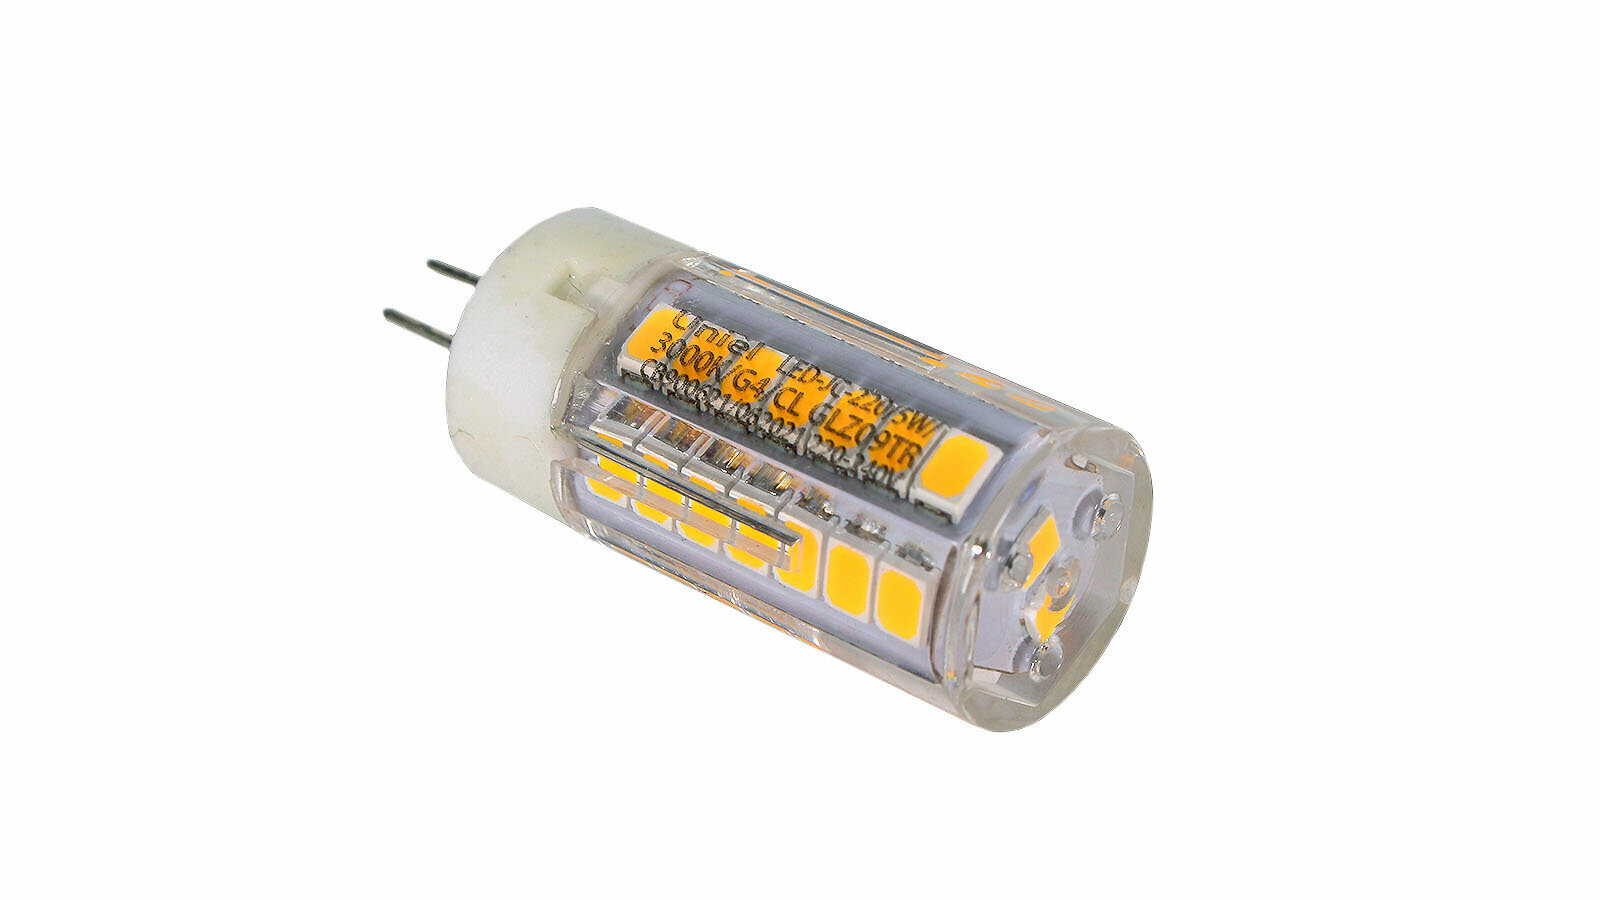 Светодиодная лампа Uniel LED-JC-220/5W/3000K/G4/CL GLZ09TR прозрачная UL-00006744